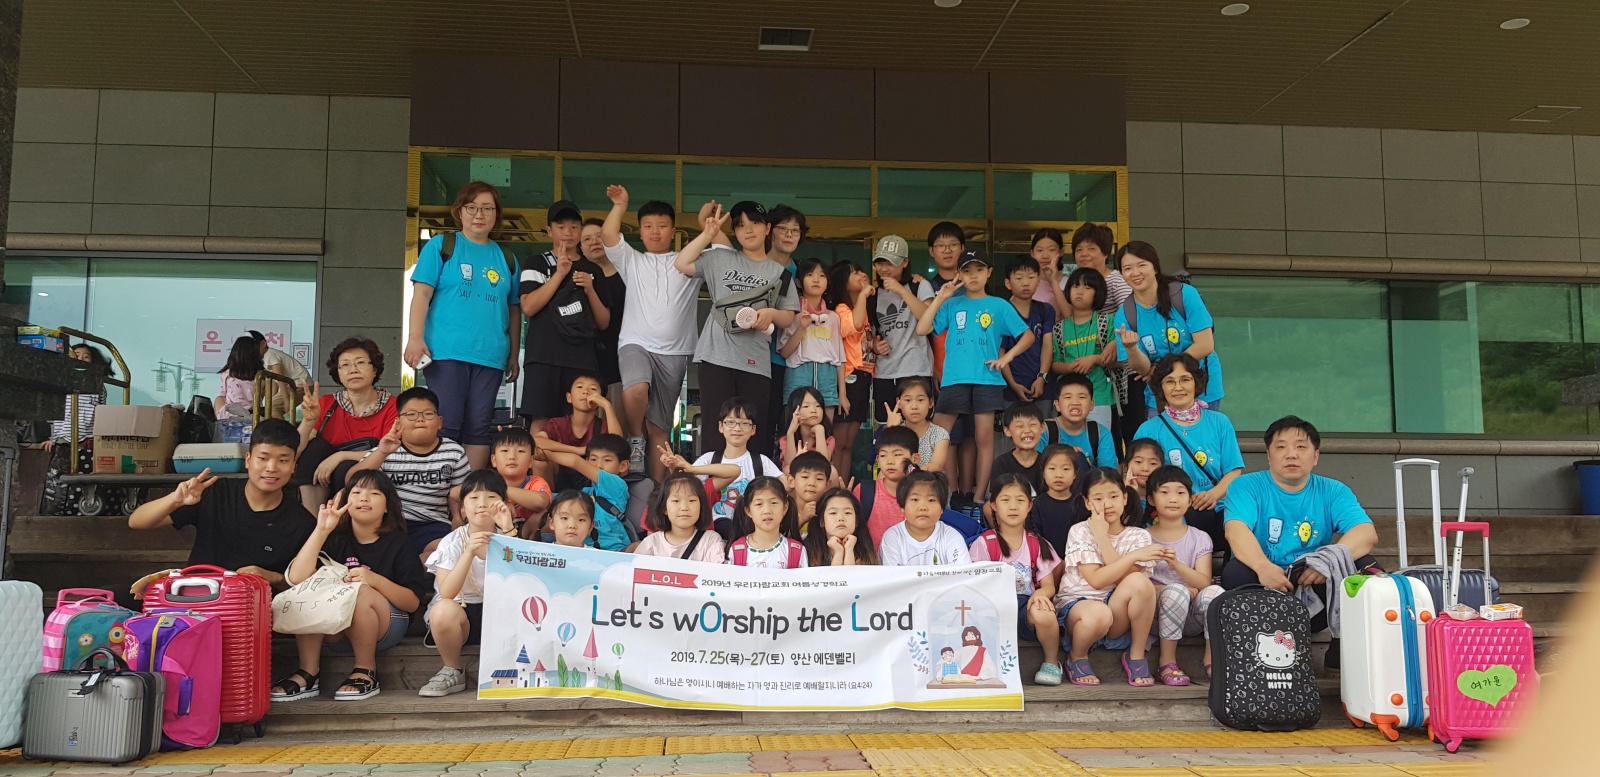 2.jpg : 2019년 우리자람교회 여름성경학교 마지막날